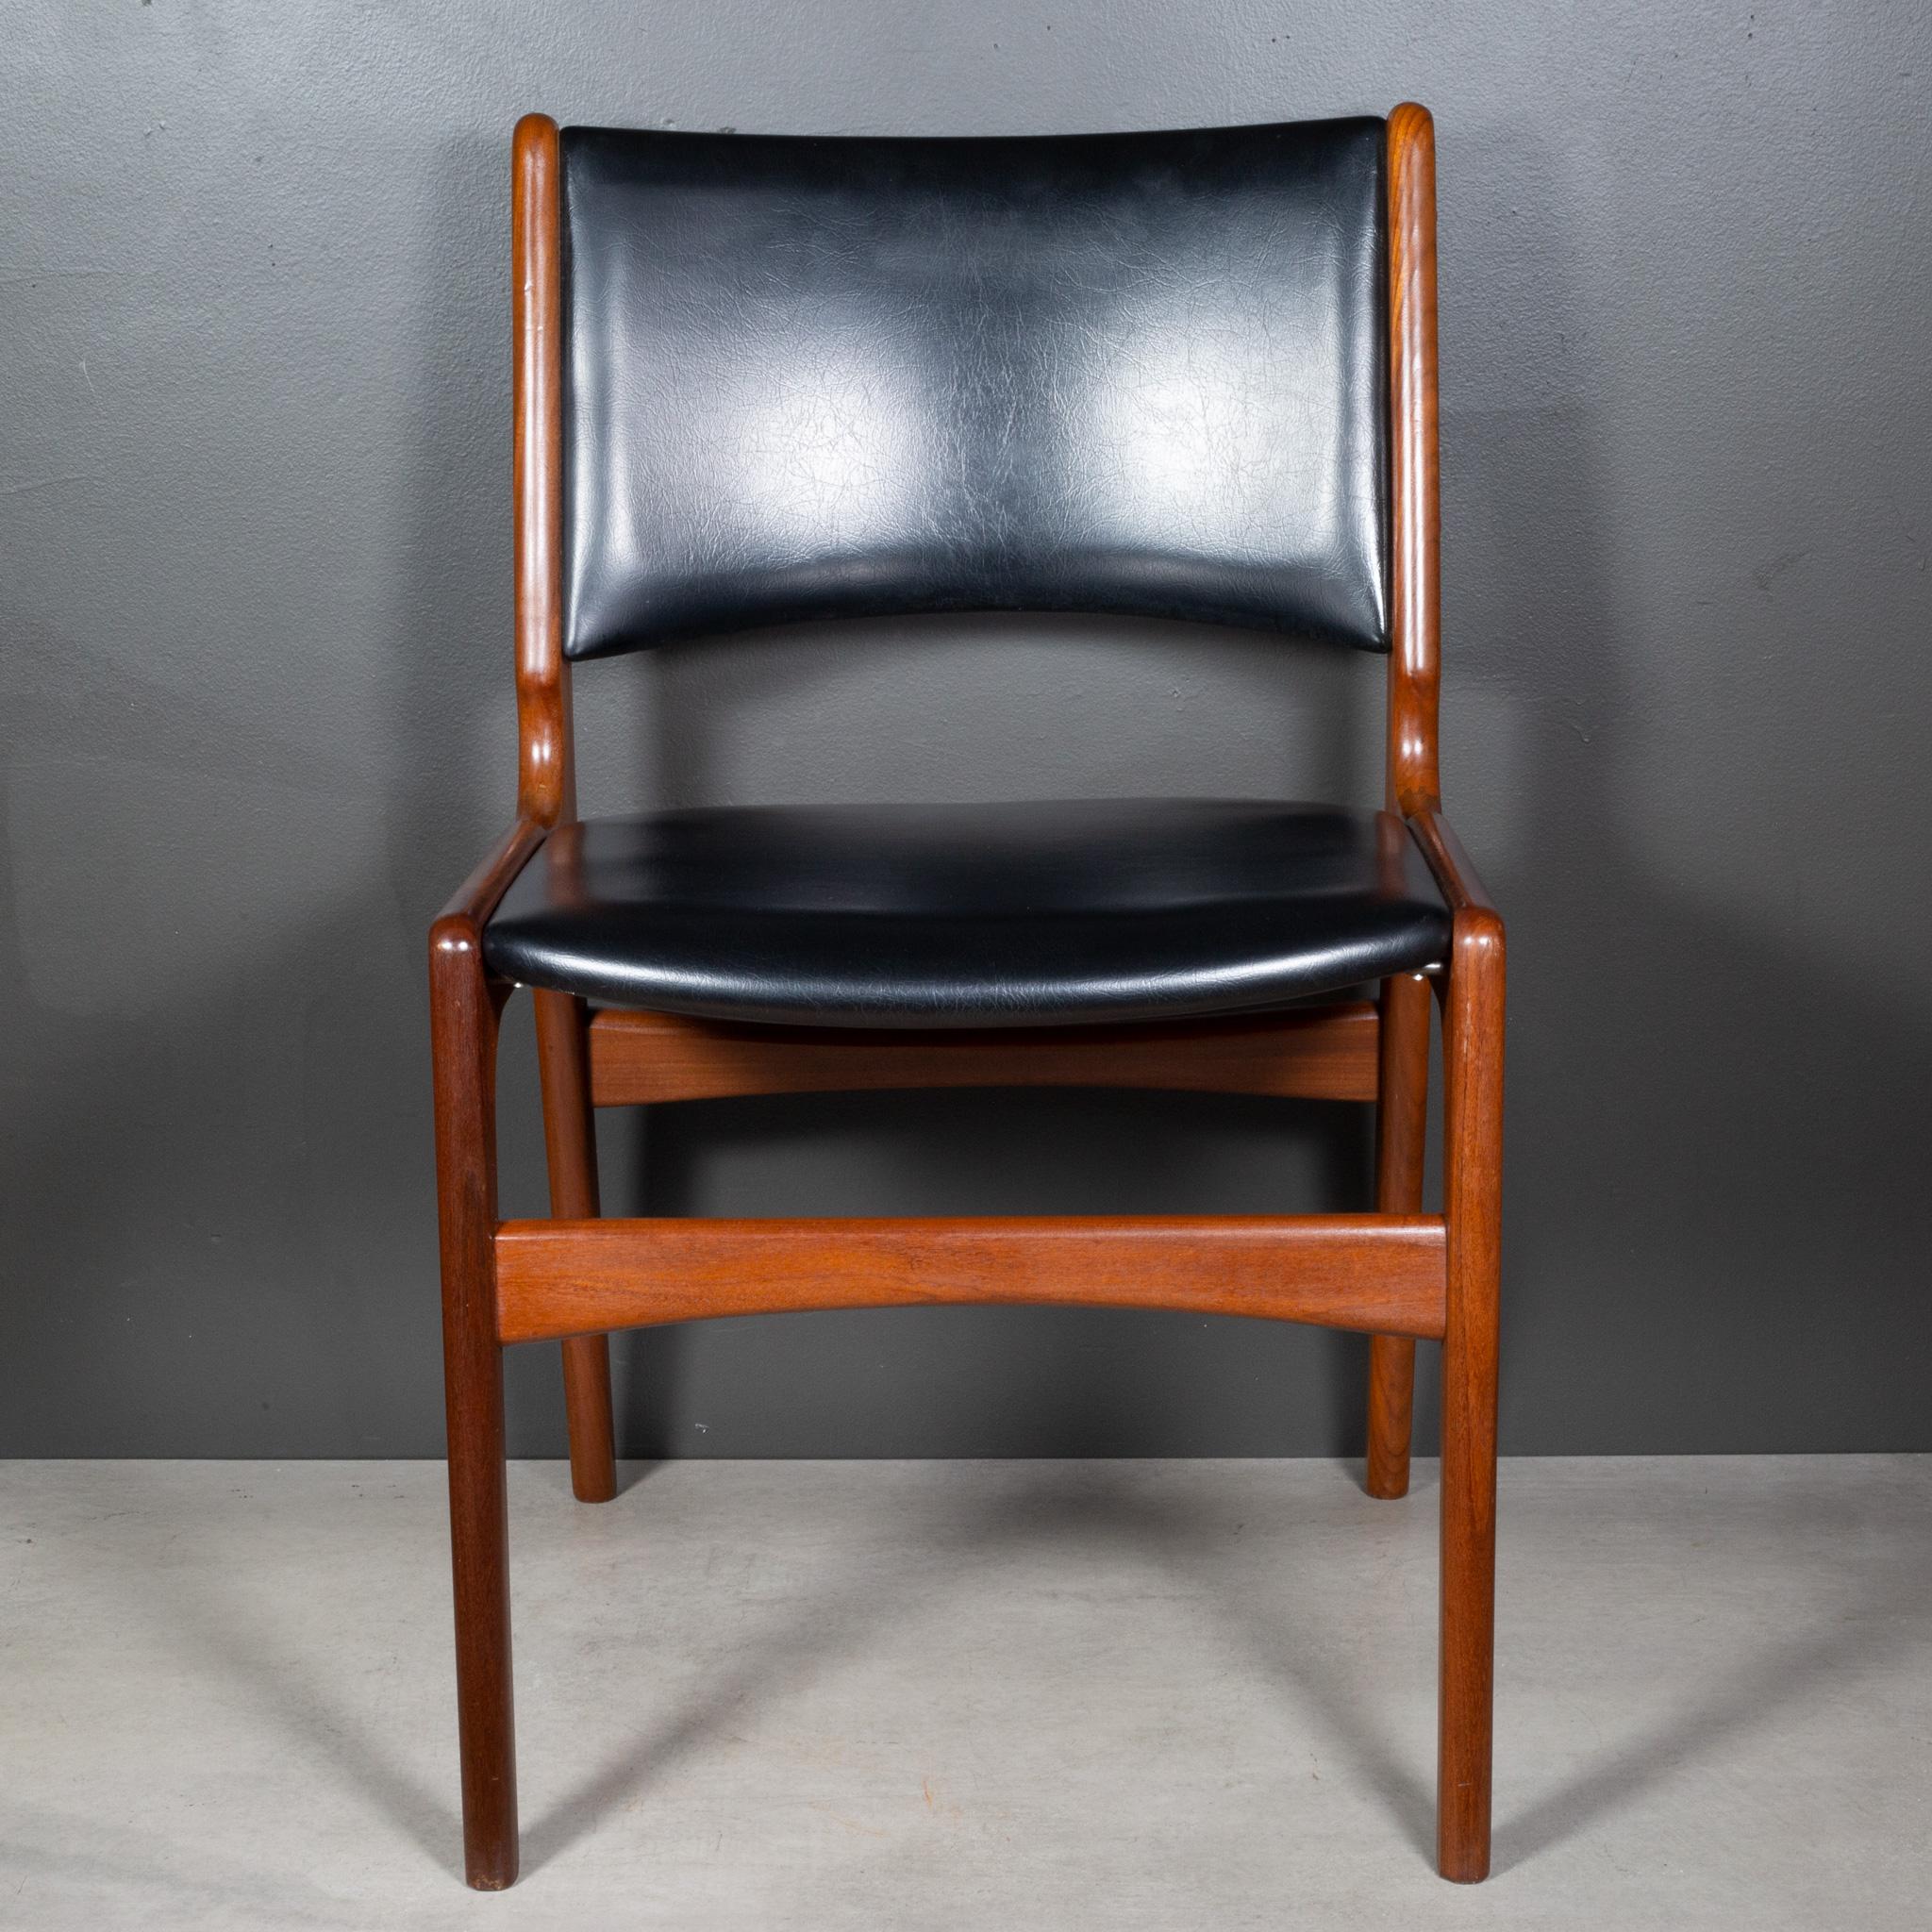 À PROPOS DE

Ensemble de quatre chaises de salle à manger modèle 89 Erik Buch pour Povl Dinesen, datant du milieu du siècle, en vinyle noir d'origine. Teck sculpté avec une belle menuiserie et des chevilles en bois sur chaque chaise.

    CRÉATEUR